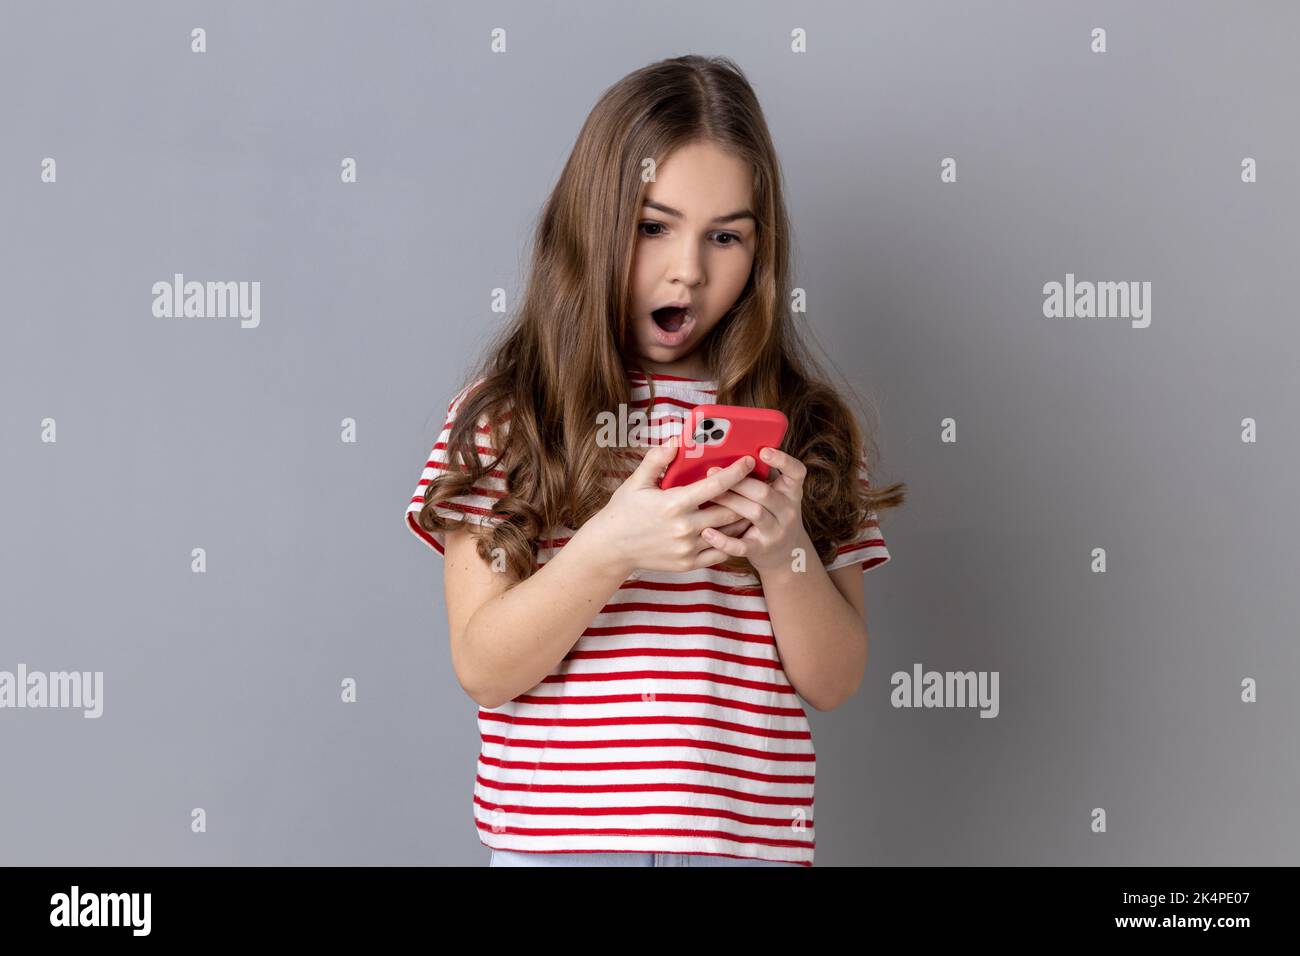 Porträt eines staunenden kleinen Mädchens, das gestreiftes T-Shirt mit Smartphone trägt, auf den Bildschirm des Geräts schaut und Post für den Blog ihres Kindes schreibt. Innenaufnahme des Studios isoliert auf grauem Hintergrund. Stockfoto